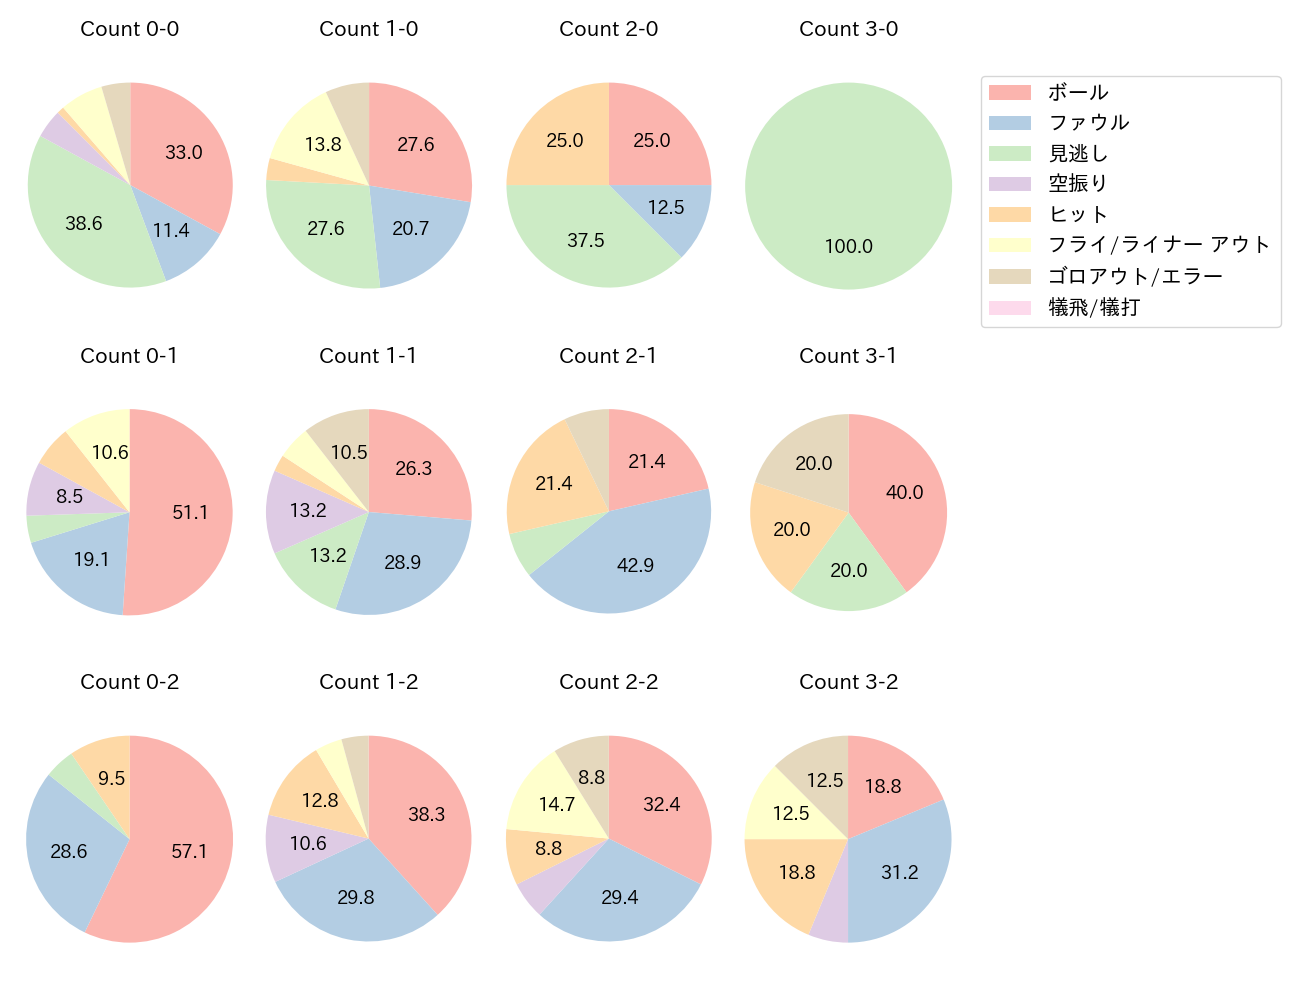 松本 剛の球数分布(2023年7月)